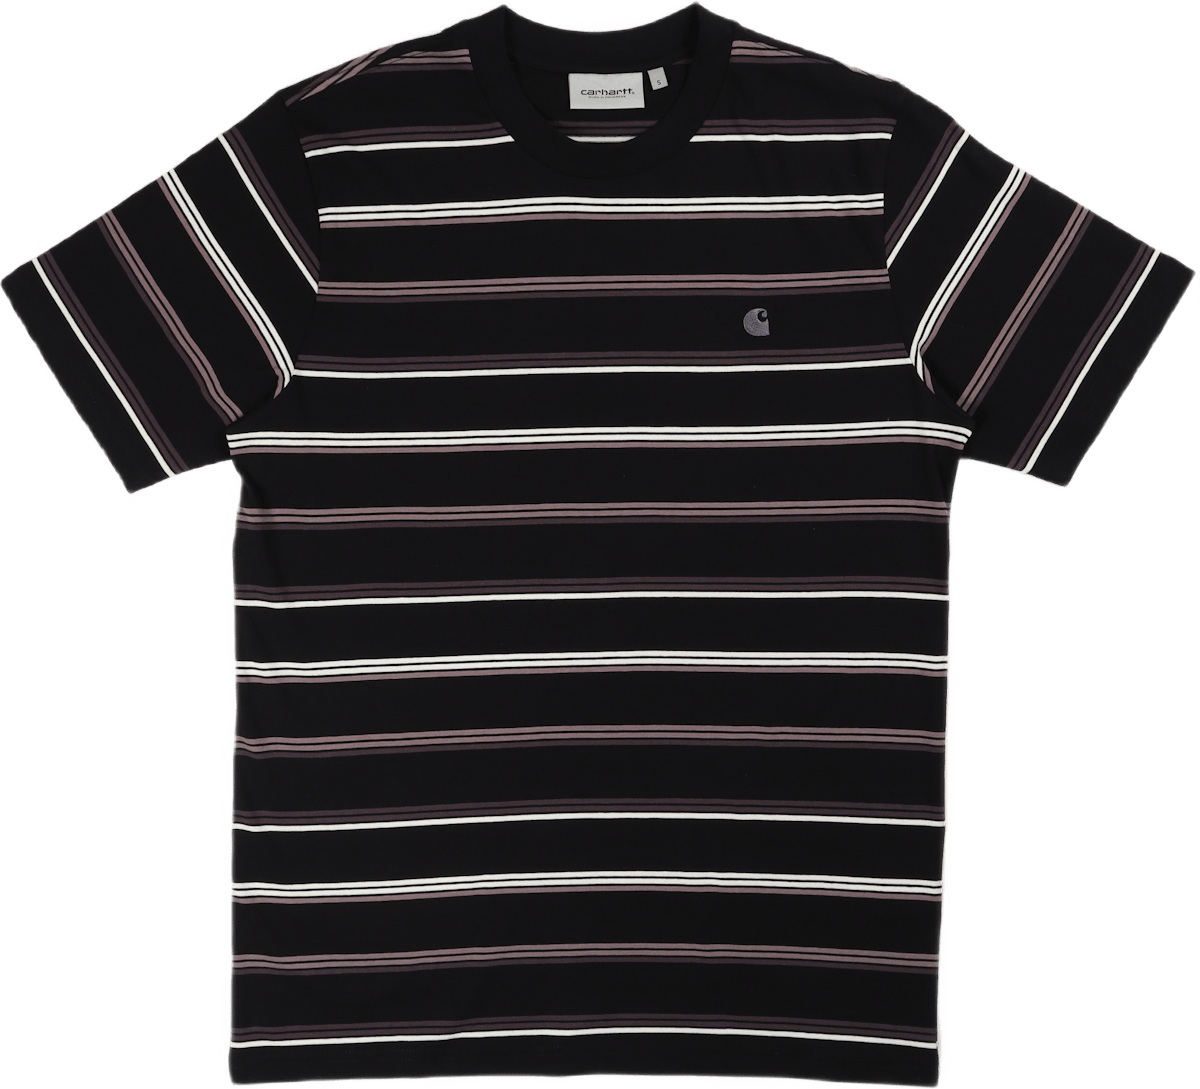 S/s Vonn T-shirt Vonn Stripe, Black / Artichoke